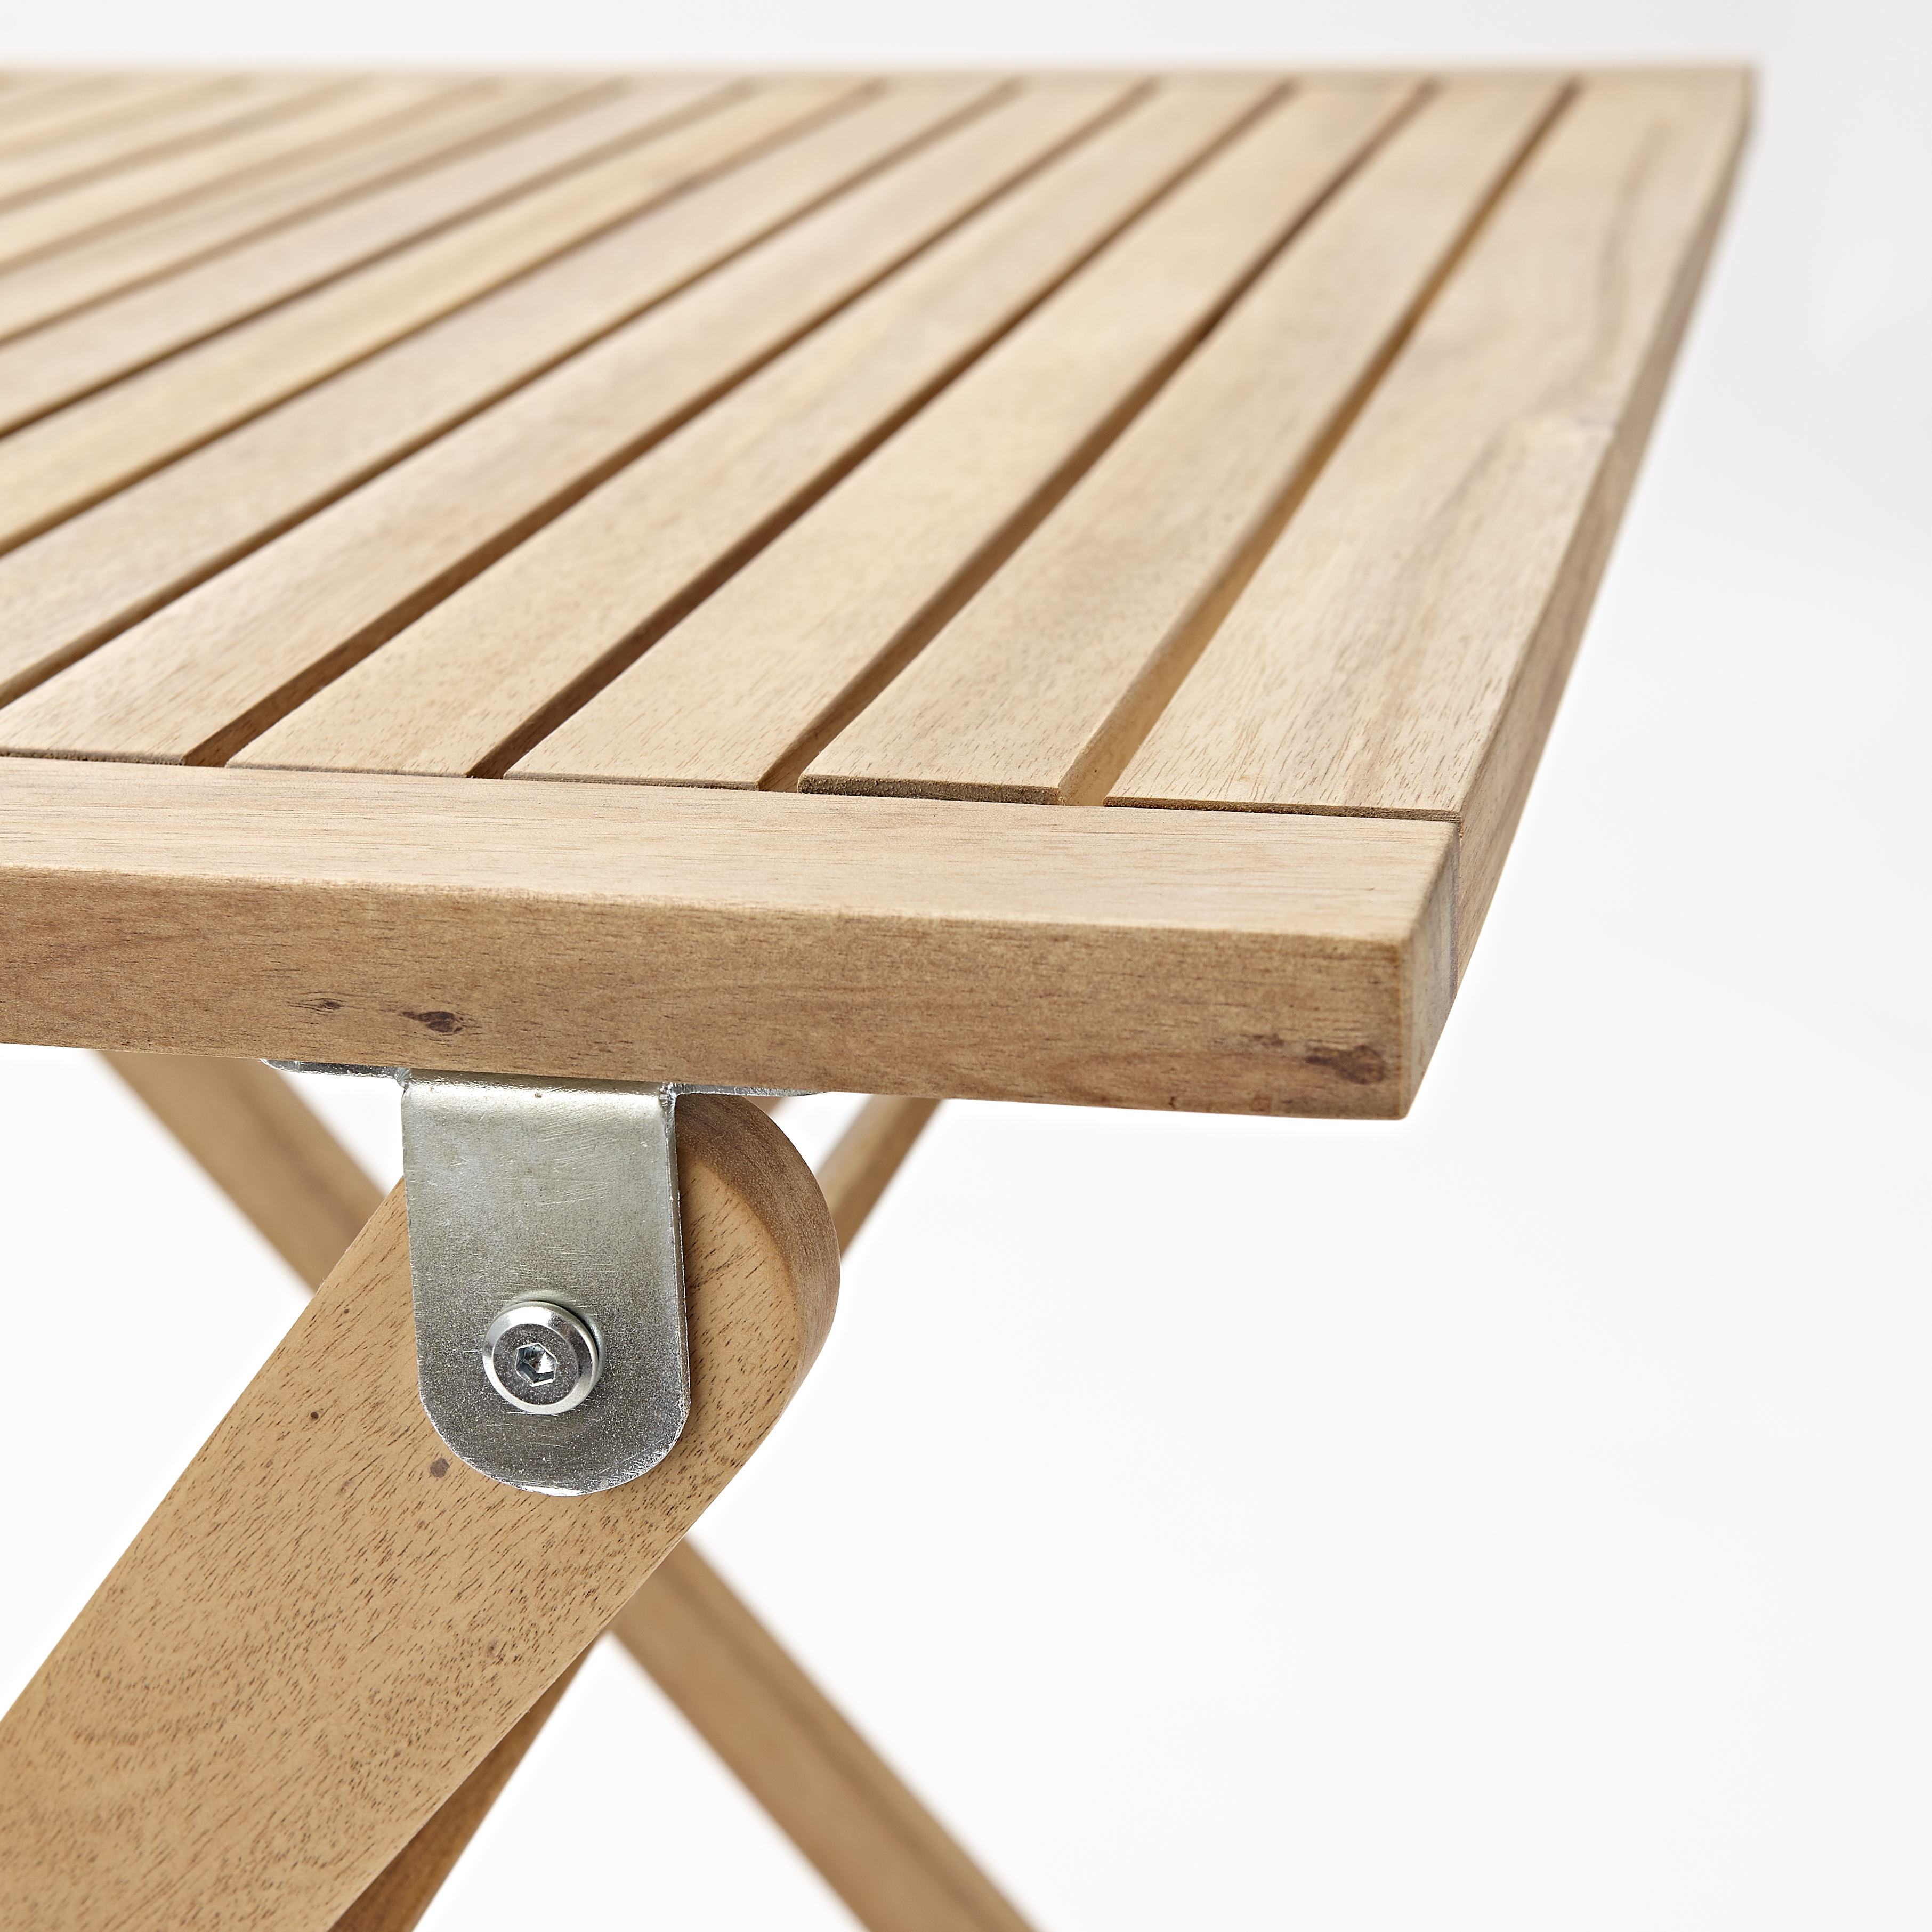 Tavolo da giardino quadrato Solis NATERIAL con piano in legno L 70 x L 70 cm - 9